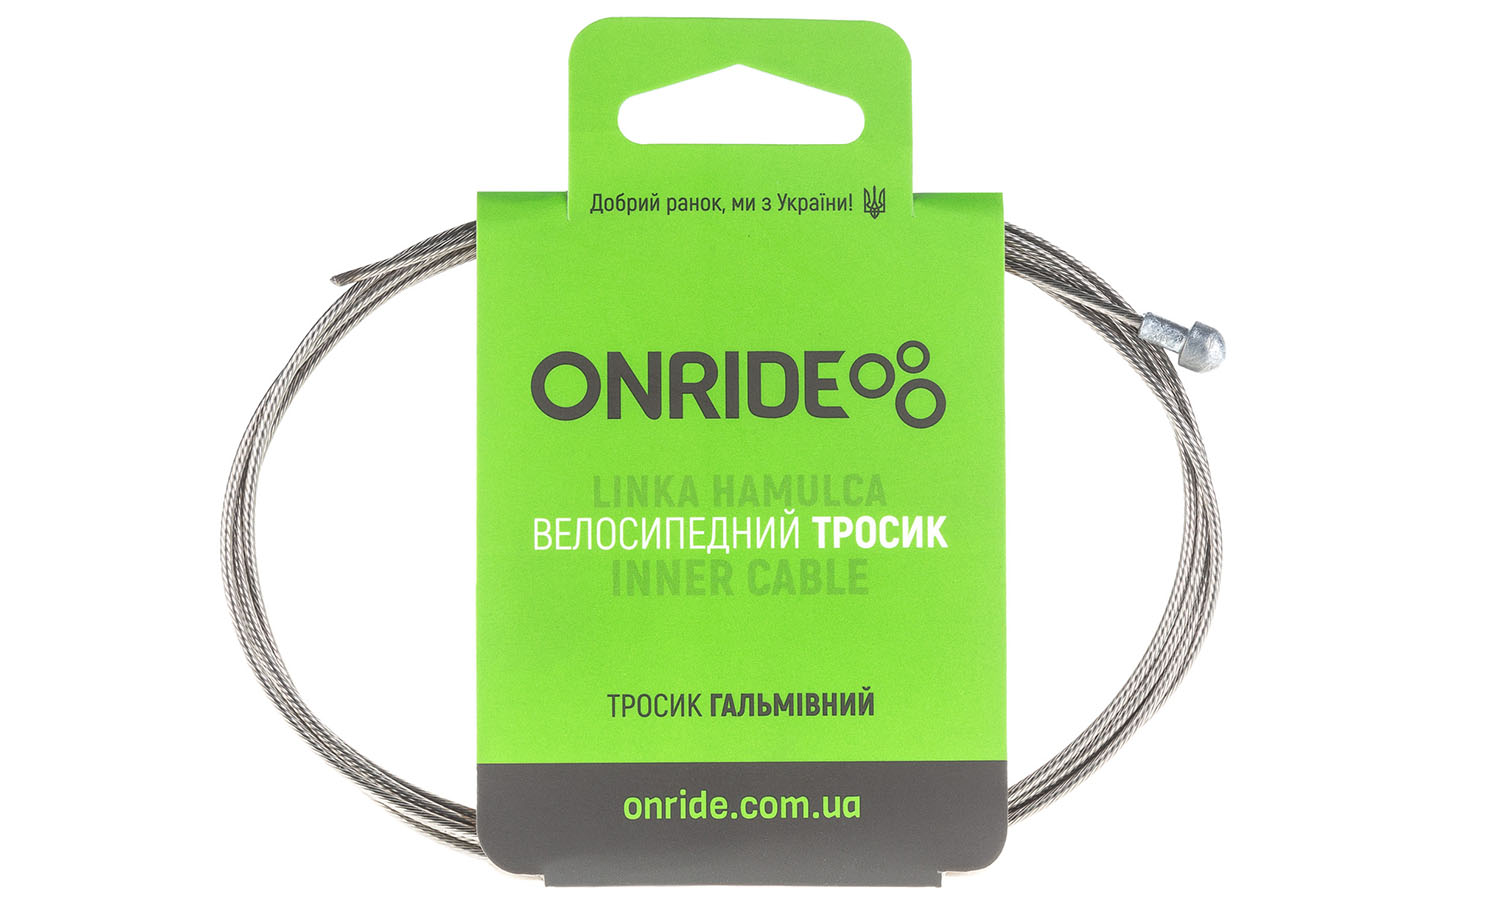 Фотография Тросик тормозной ONRIDE Road, нержавейка, полированный, 1,7 м, индивидуальная упаковка блистер